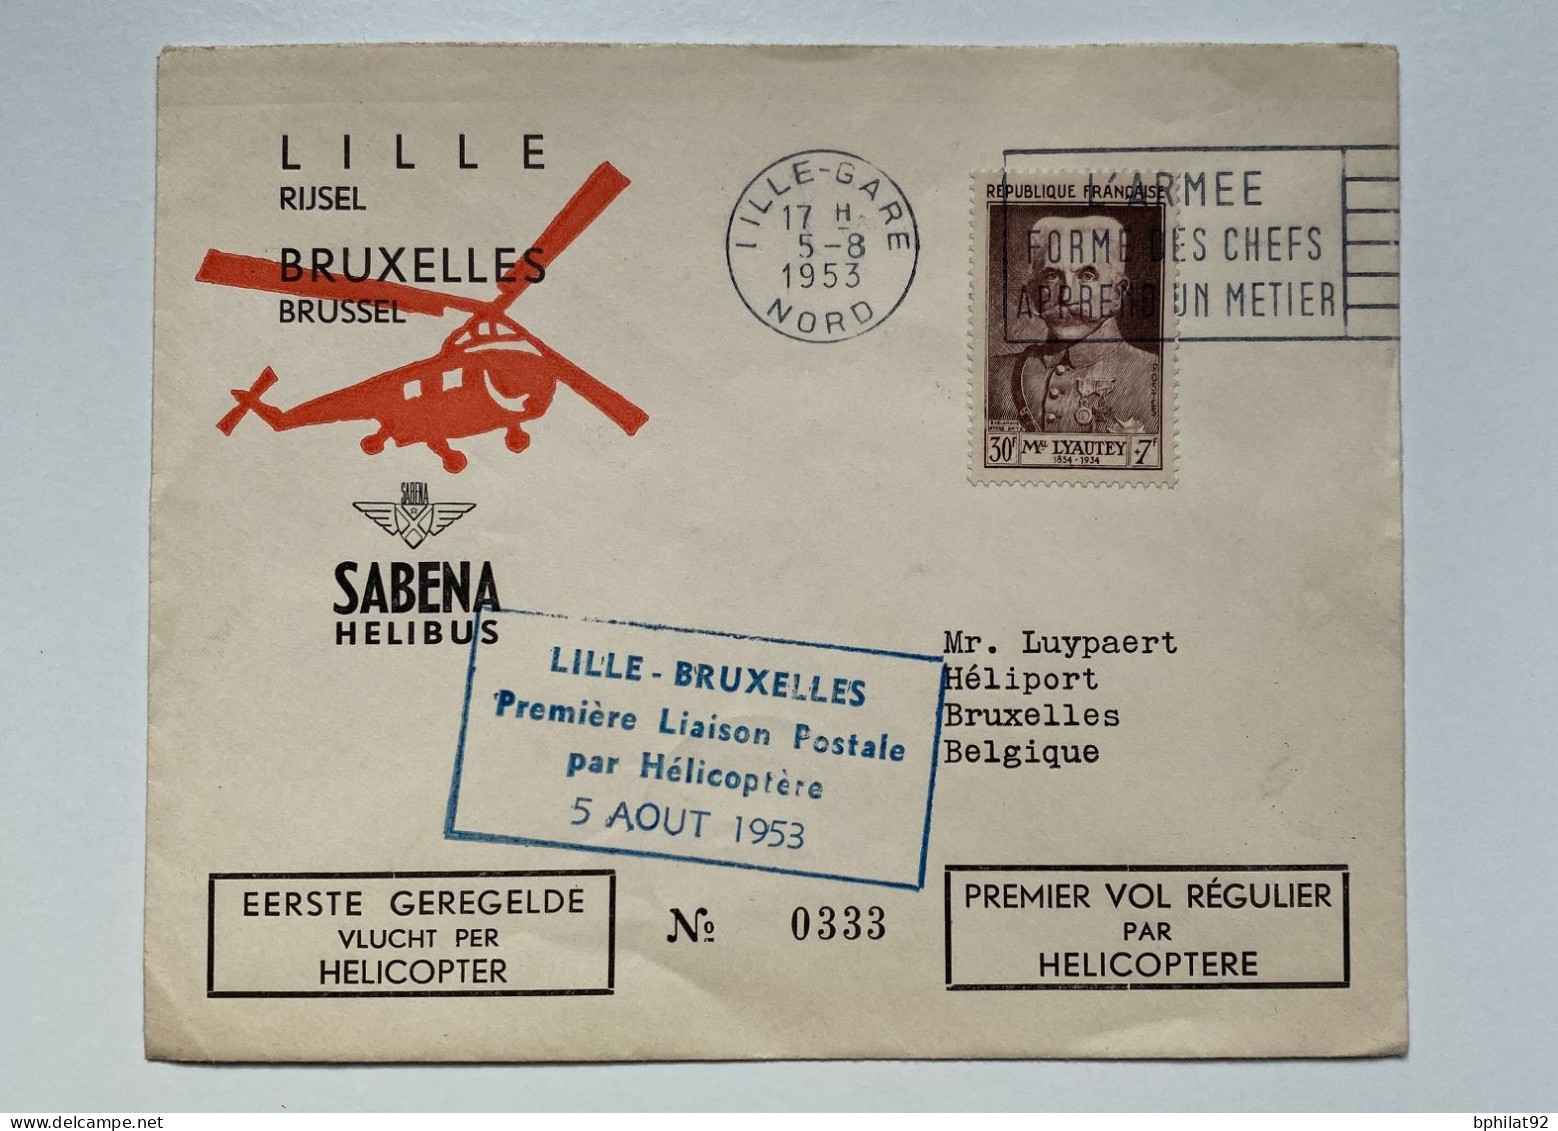 !!! BELGIQUE, COMMEMO 1ER VOL RÉGULIER PAR HÉLICOPTÈRE VIA LA SABENA LILLE BRUXELLES 5/8/1953 - Covers & Documents